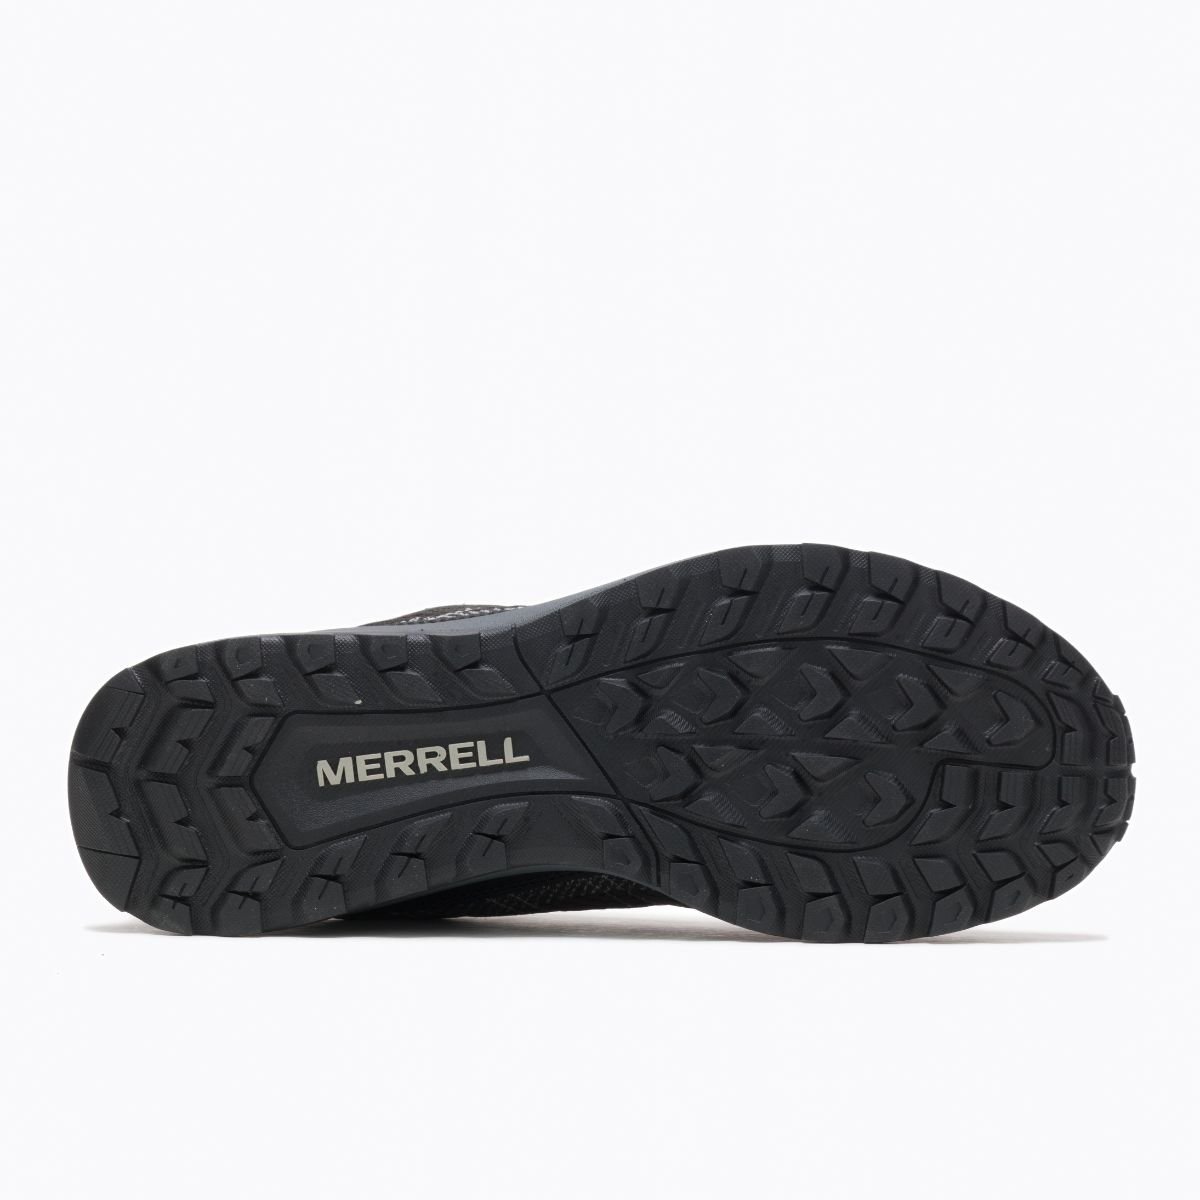 Topánky Merrell J067157 Fly Strike M - čierna